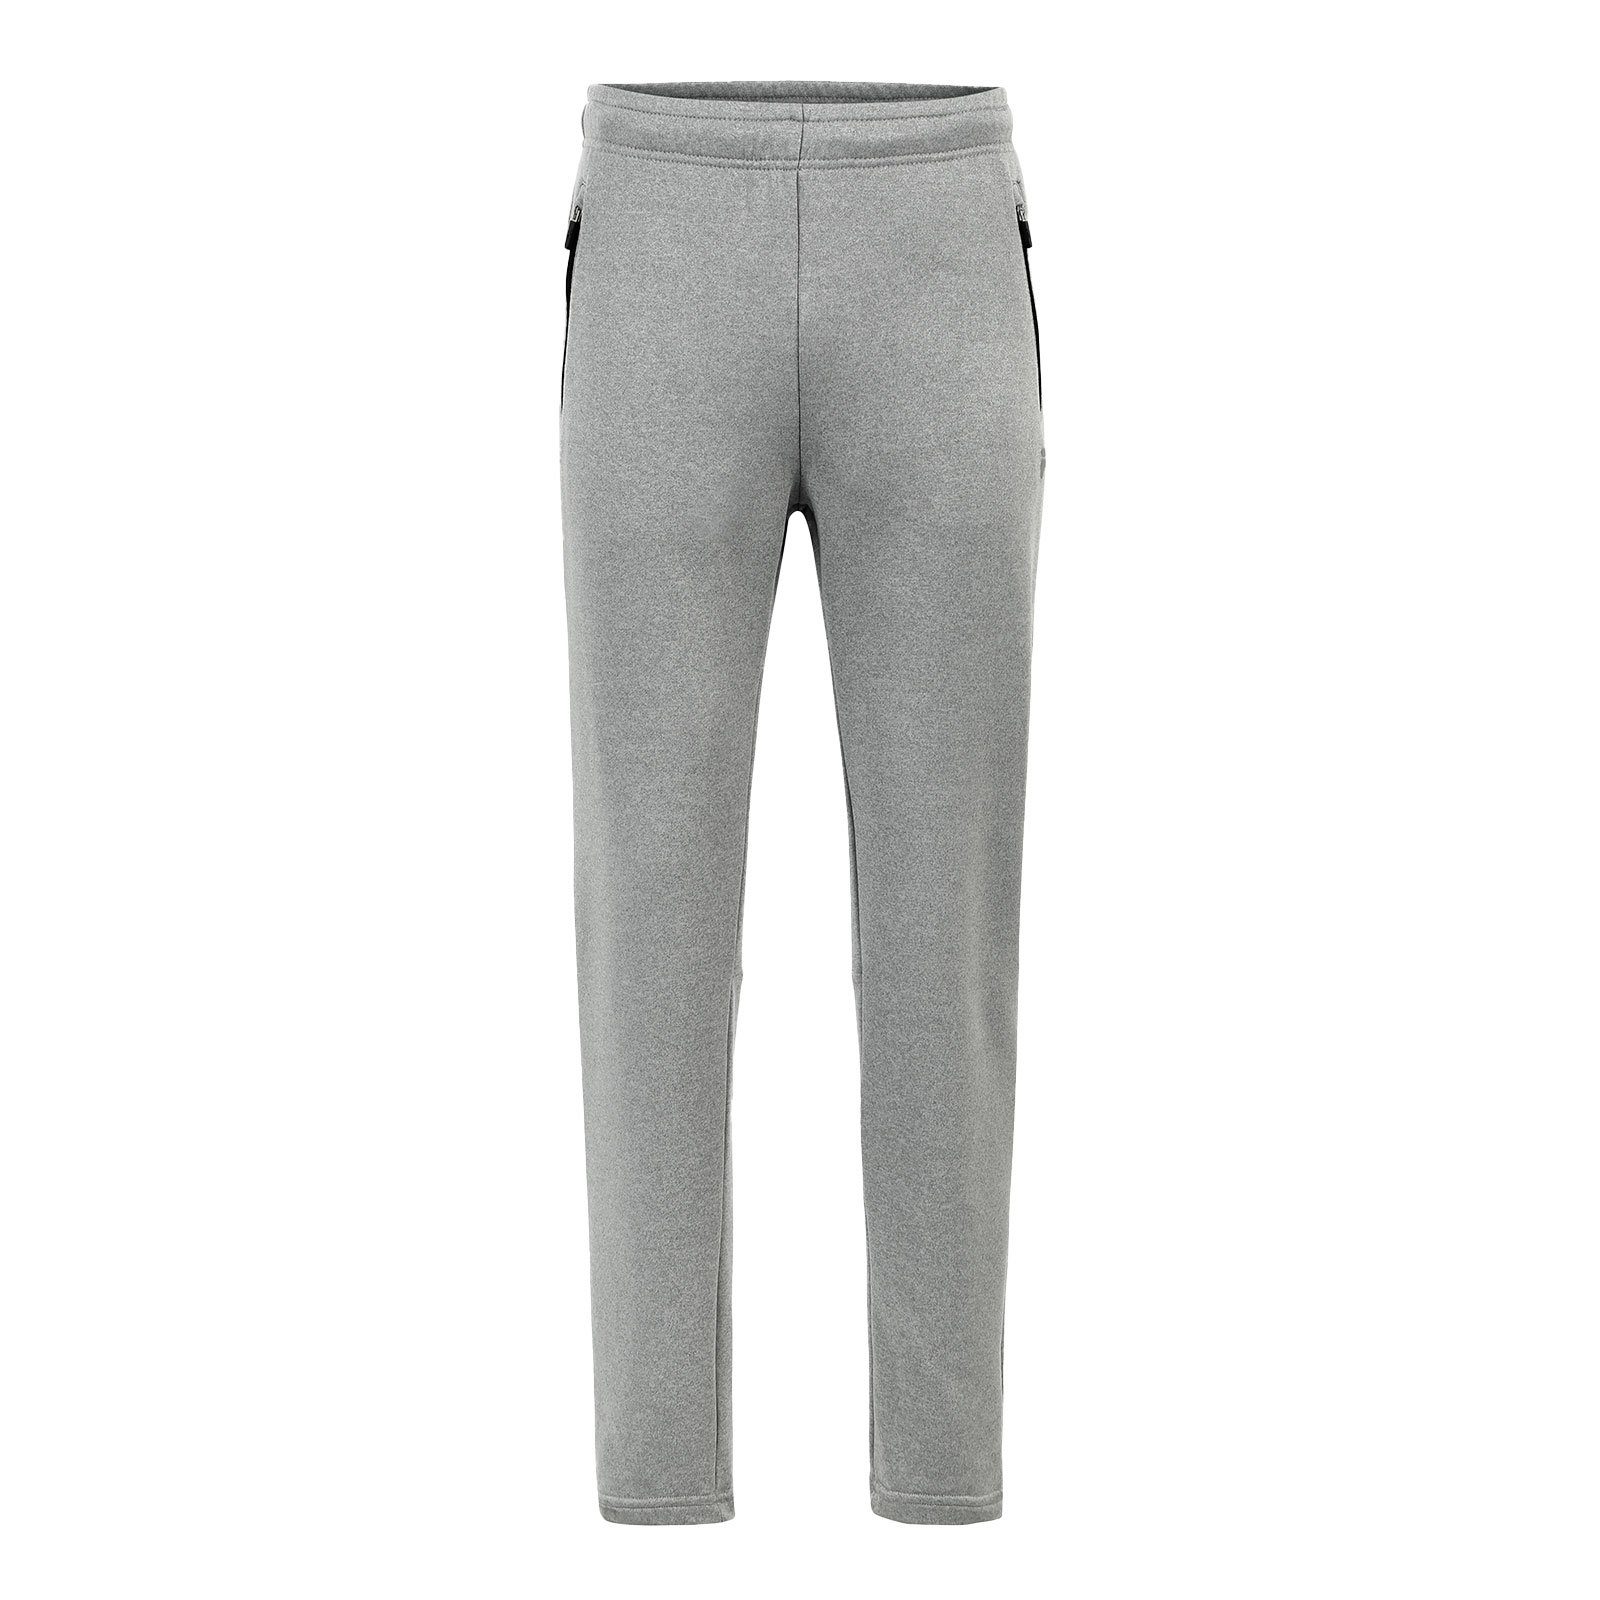 Fila Sweathose Lanz Sweatpants mit reflektierendem Logo auf dem linken Oberschenkel 80000 light grey melange